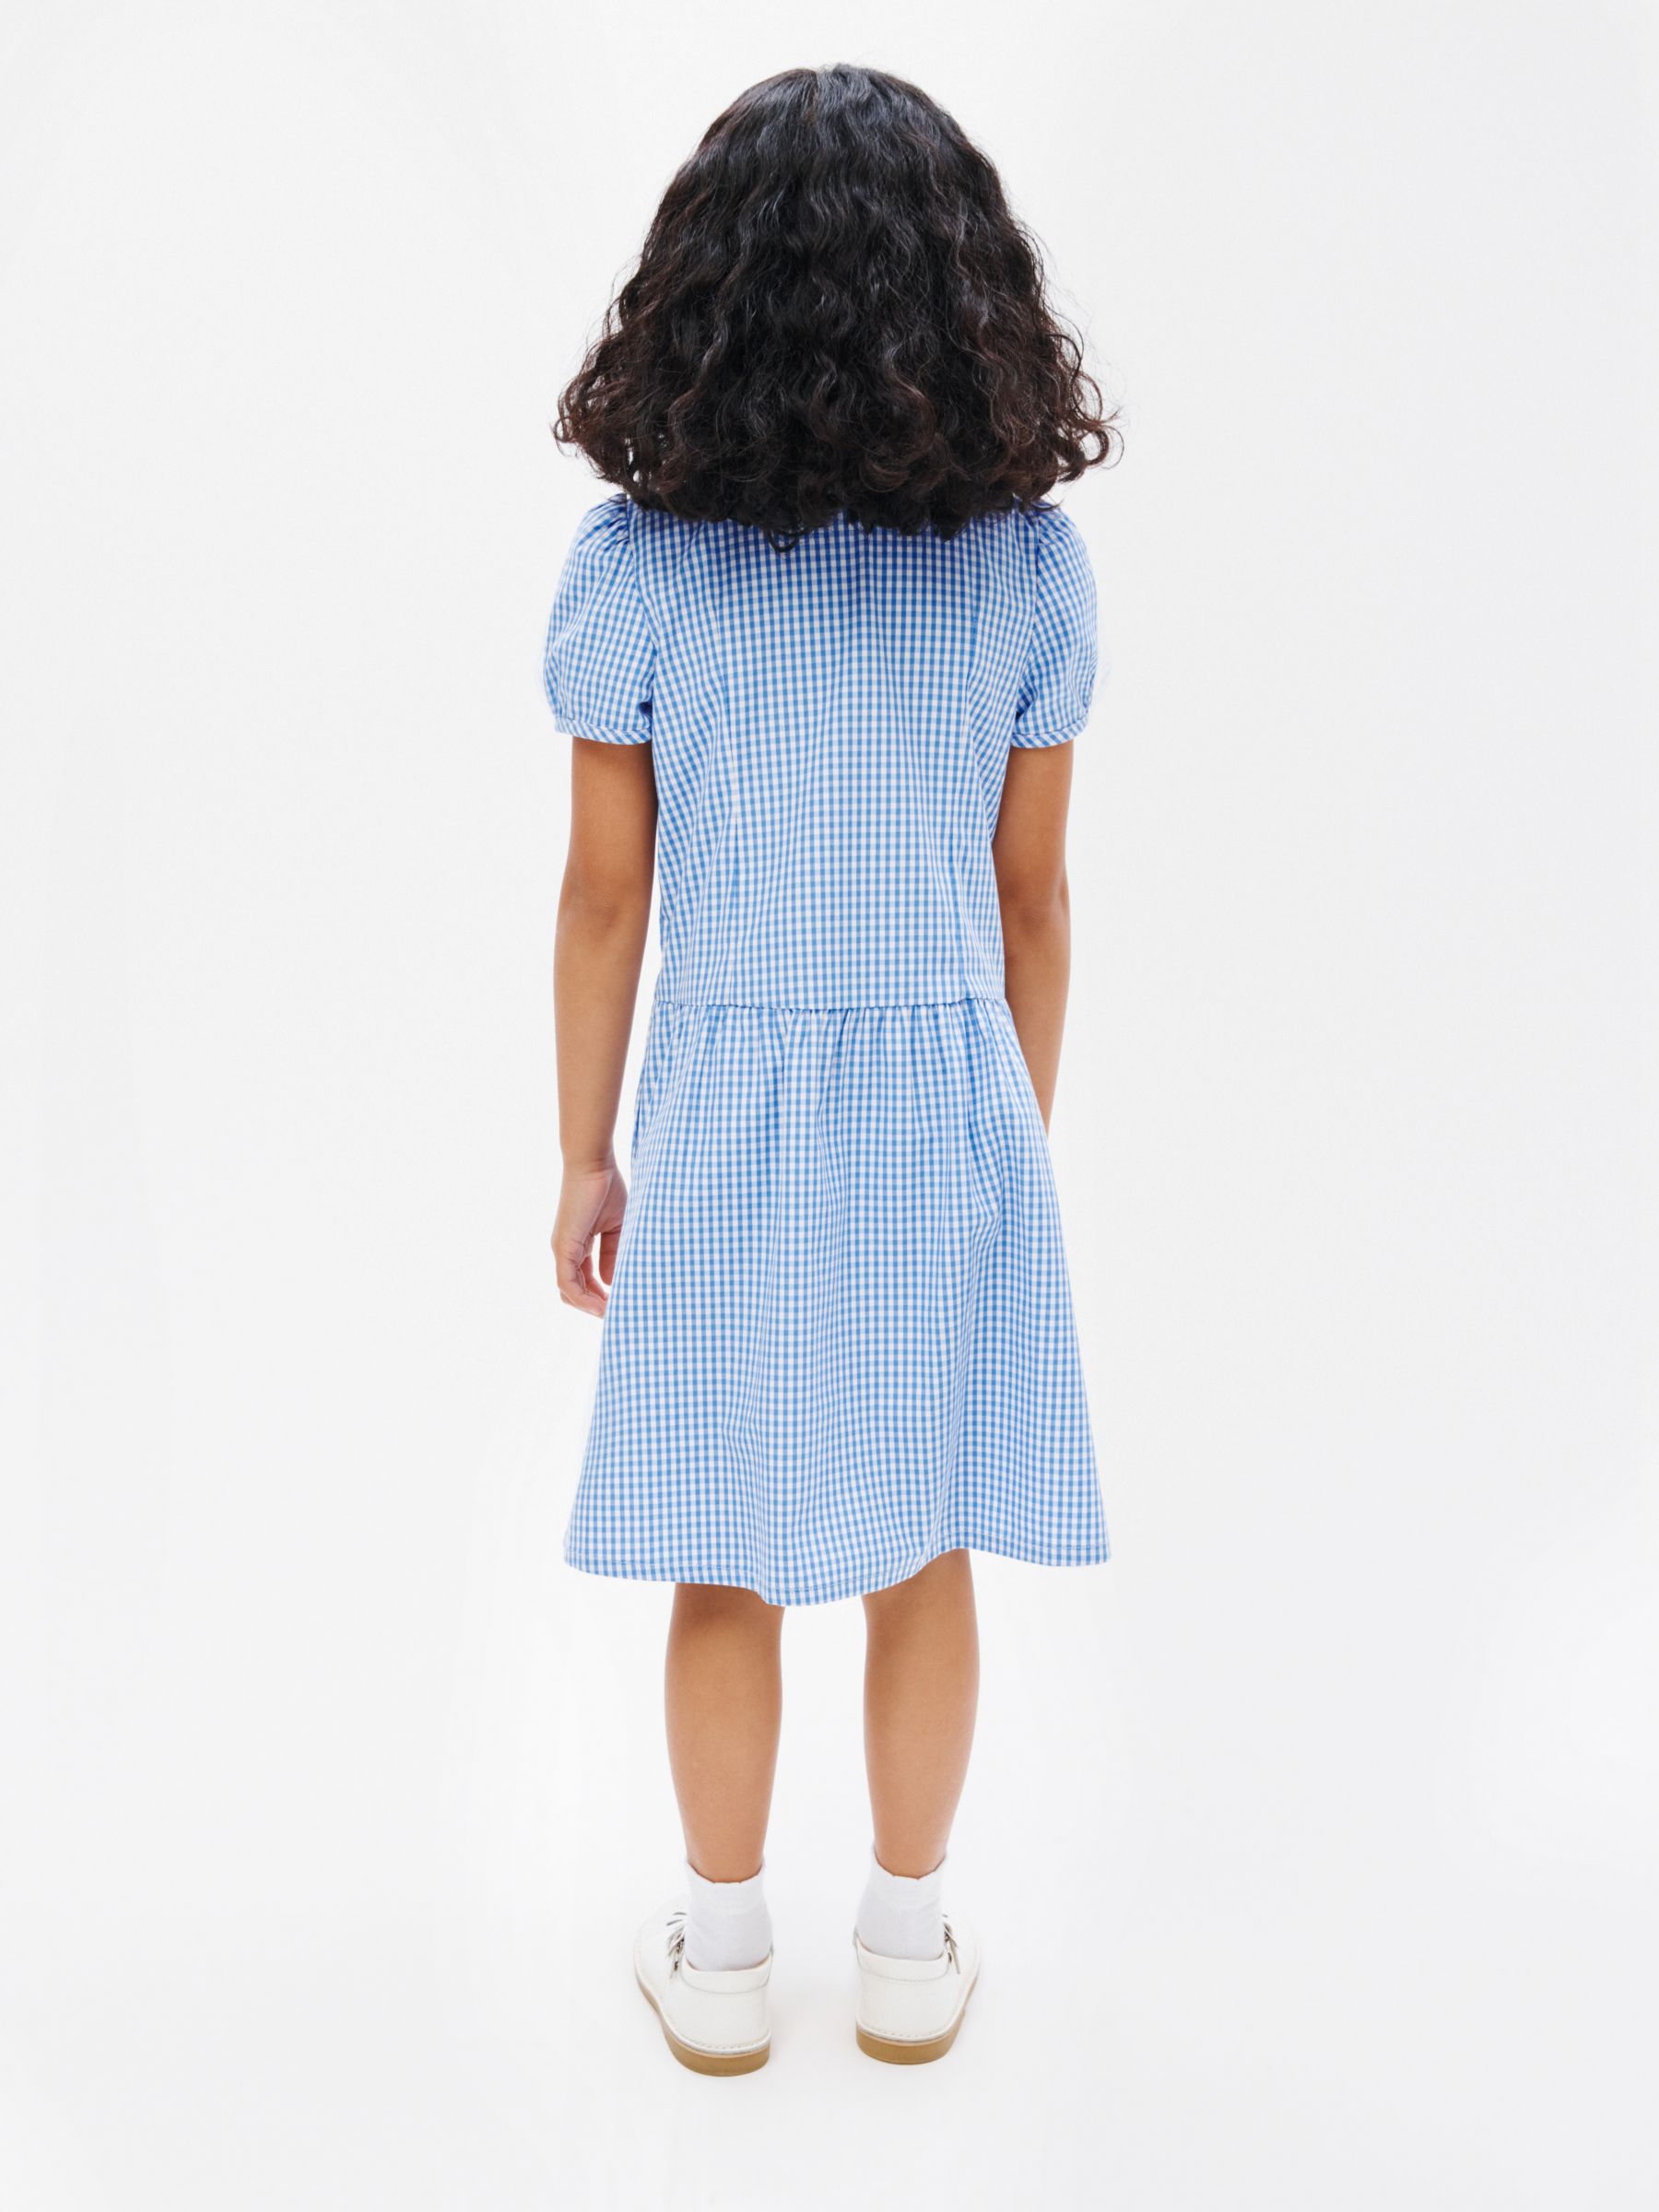 John Lewis School Gingham A-Line Summer Dress, Light Blue, 8 years